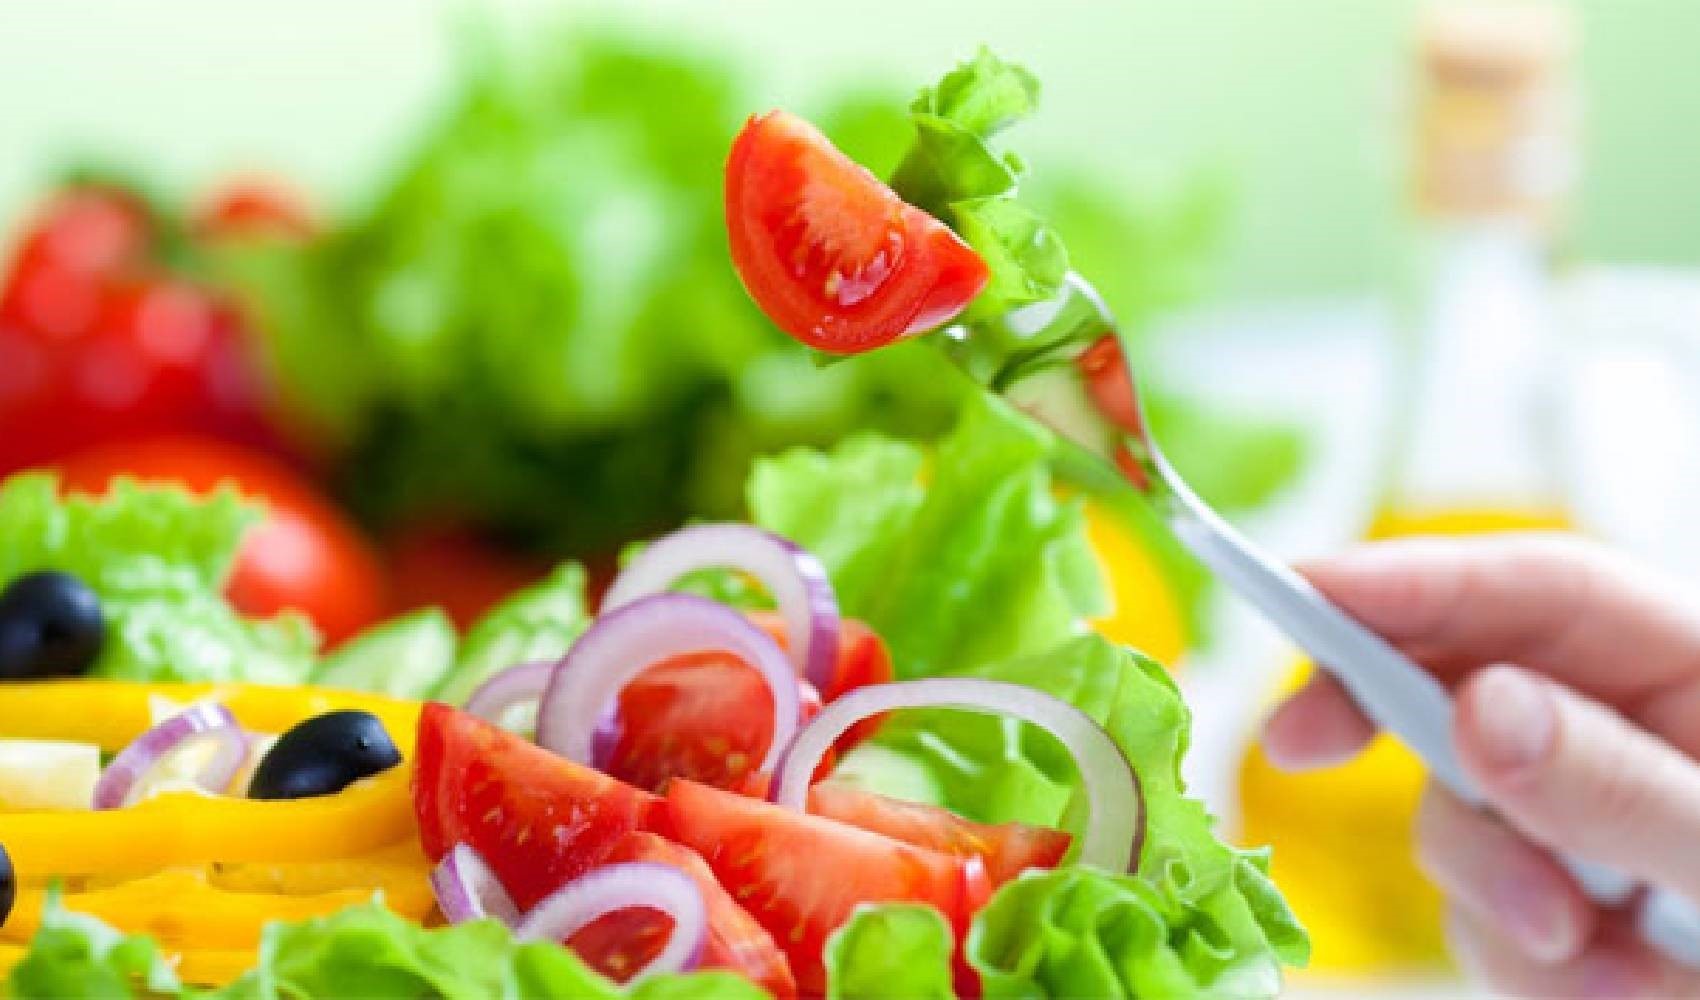 Uzman Diyetisyen Akyılmaz’dan yaz tavsiyesi: 'Karpuz, salatalık, domates ve marul gibi su içeriği yüksek besinleri tercih edin'